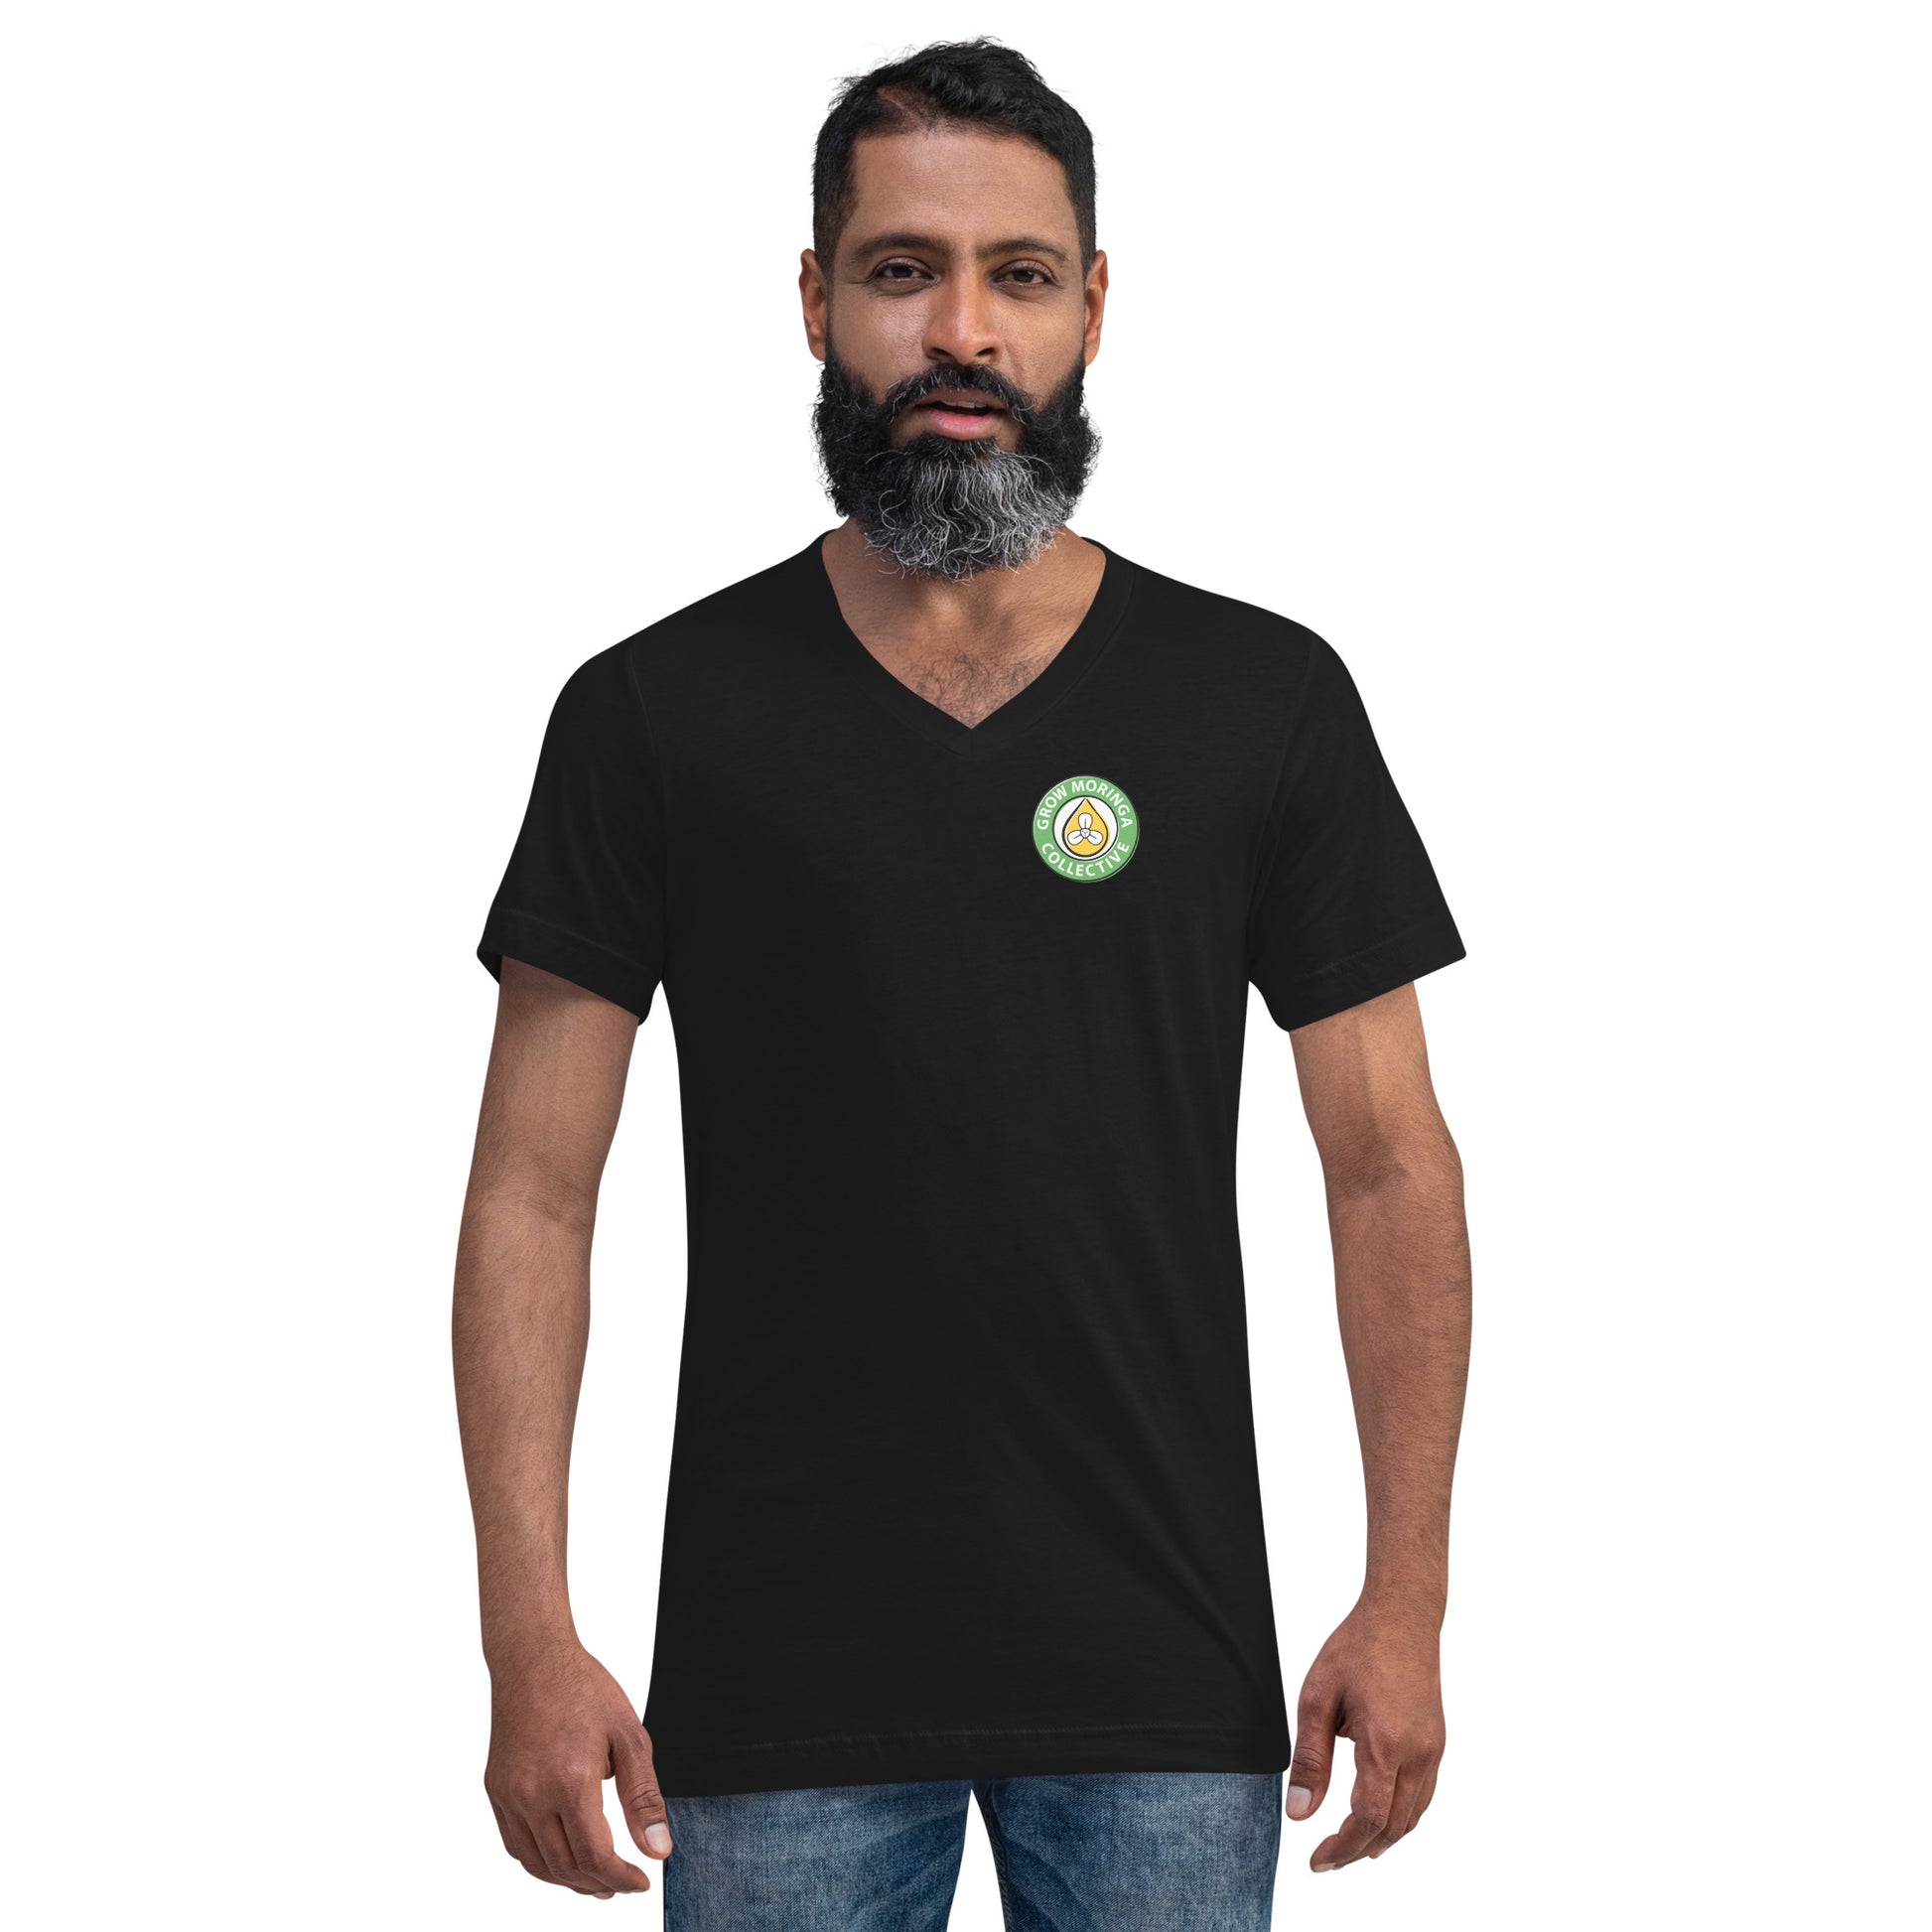 Man in Black V Neck Shirt with Grow Moringa Logo on Left Chest